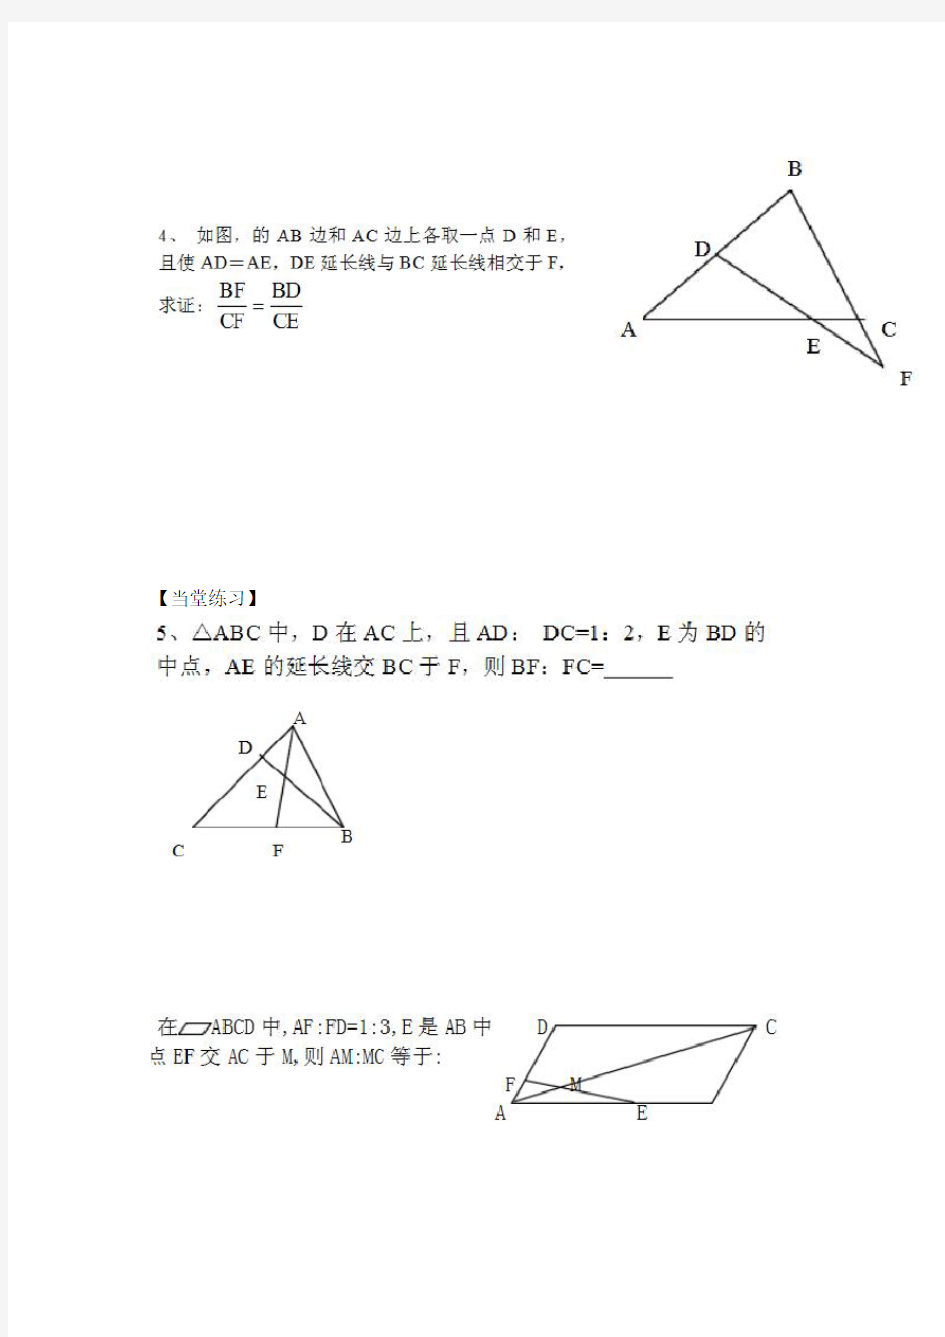 相似三角形常用辅助线做法